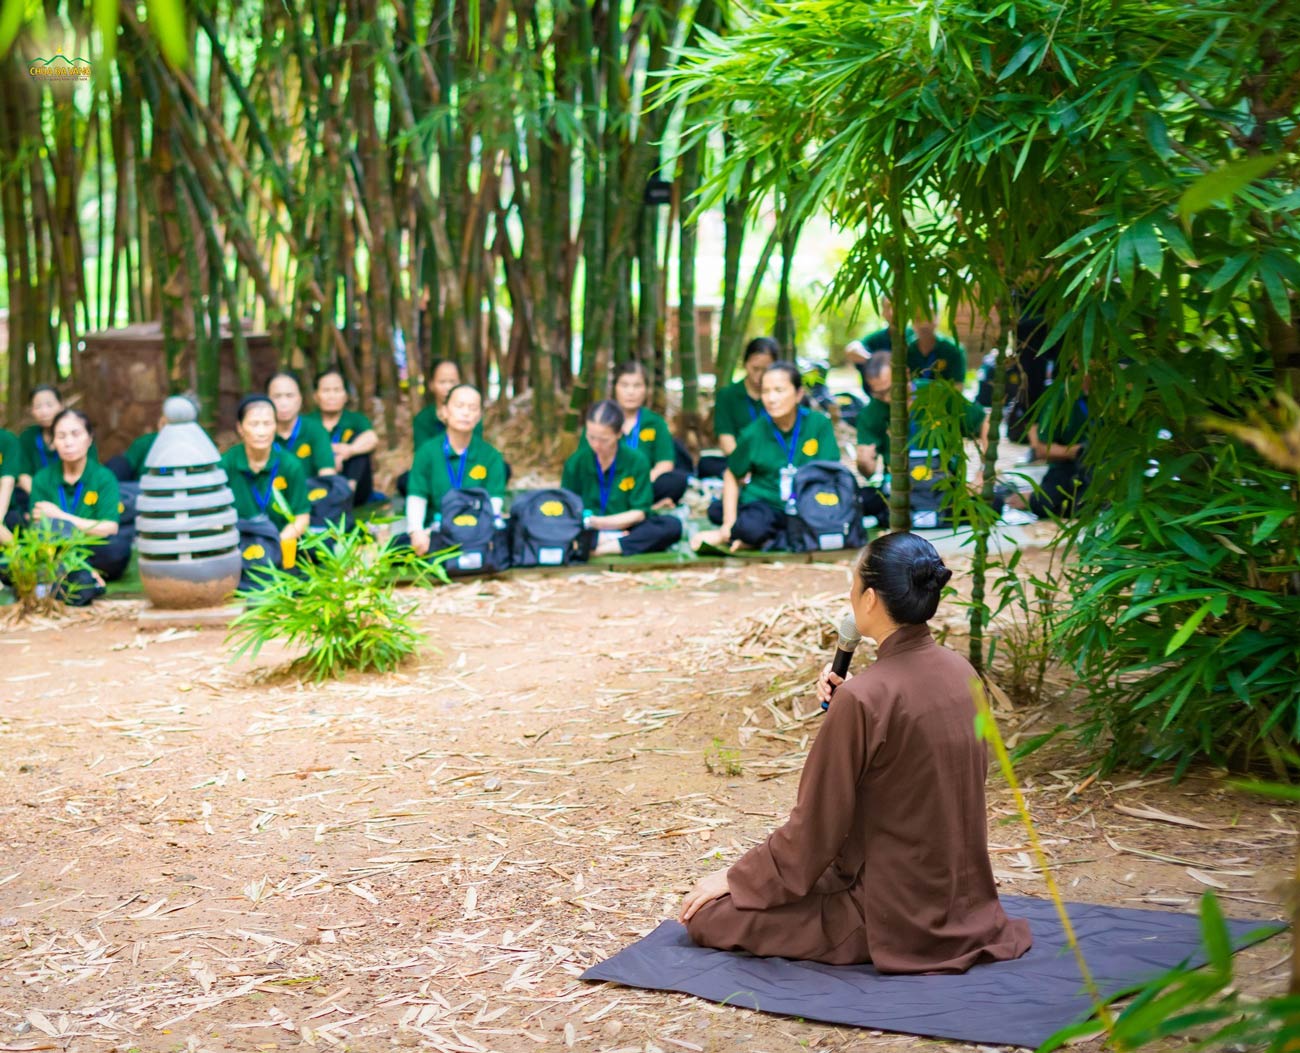 Kết thúc thời khóa, các Phật tử đã chia sẻ những cảm nhận của mình về hành trình và nhận được những lời chia sẻ đầy ý nghĩa từ Cô chủ nhiệm